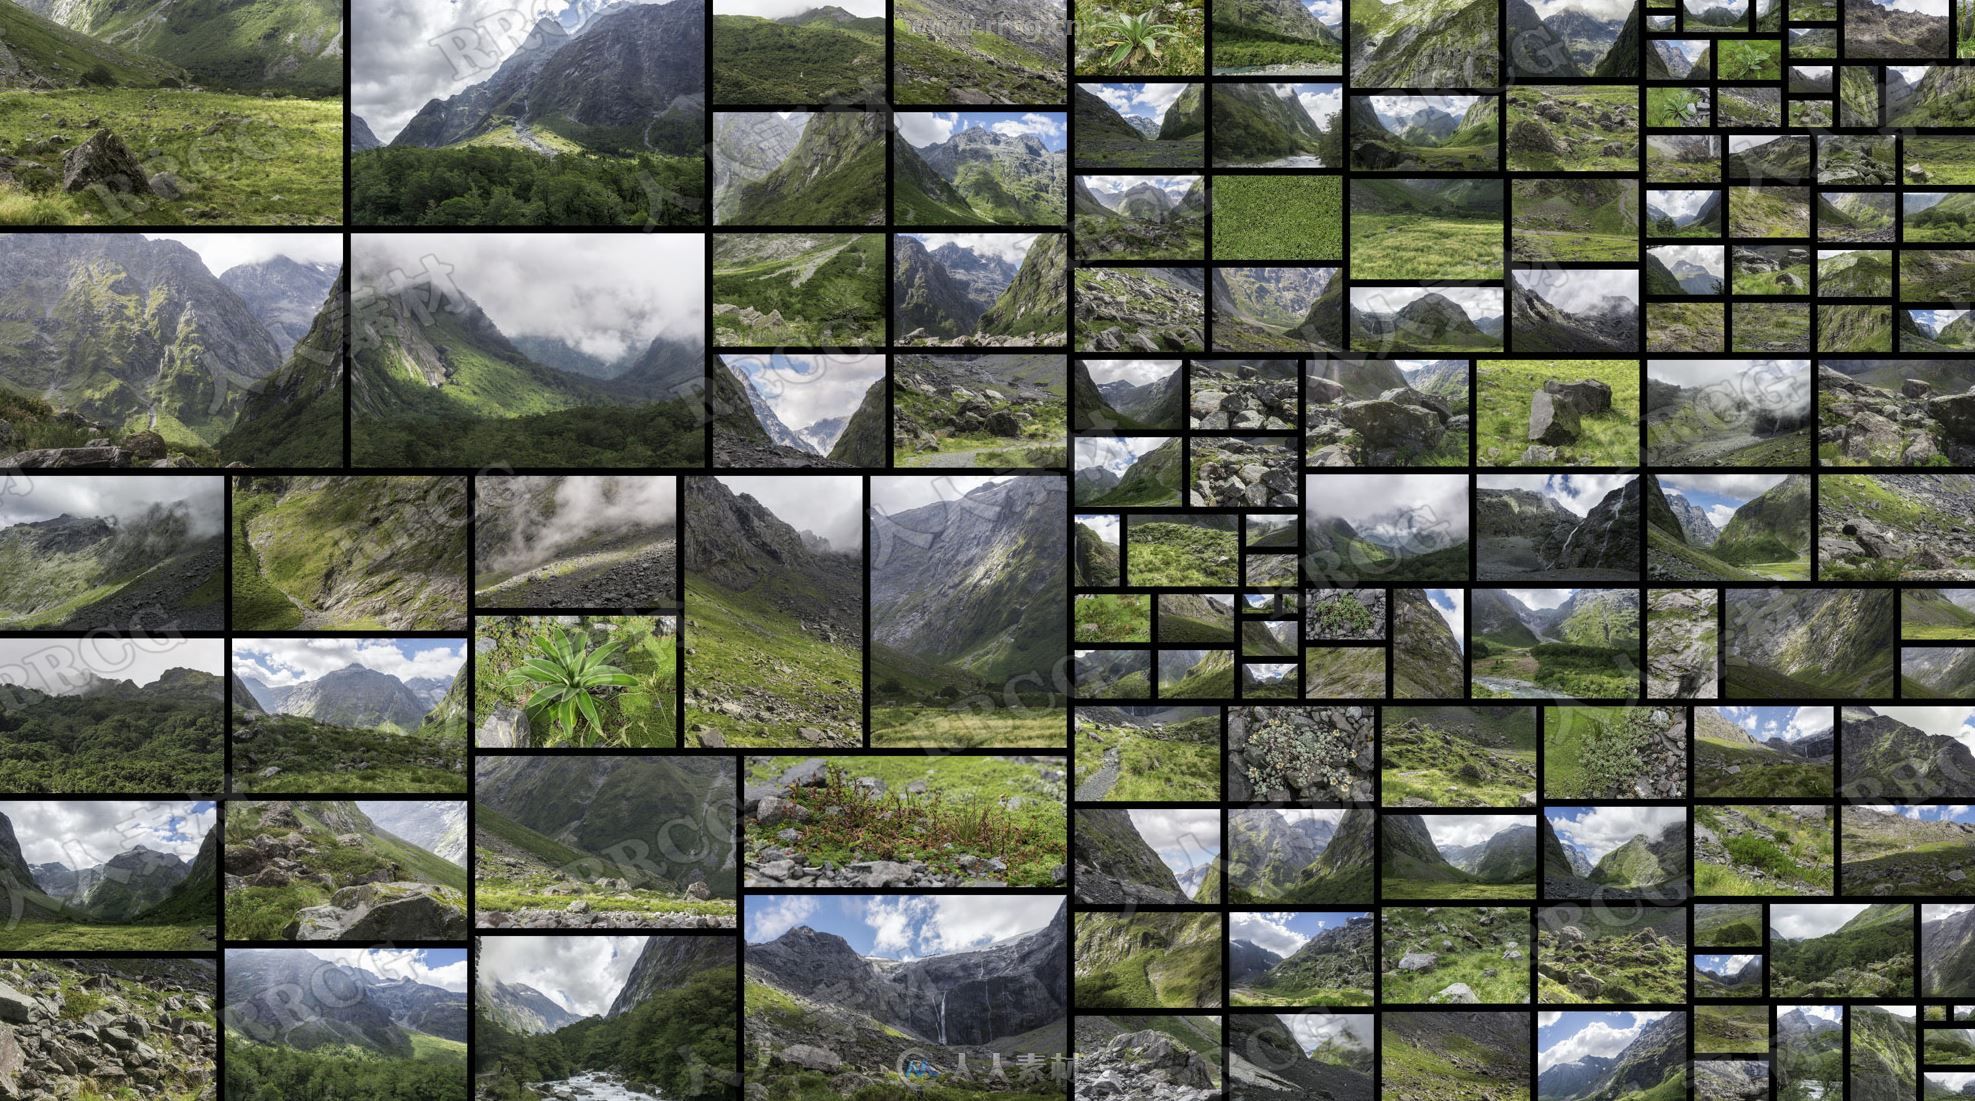 143组绿色山谷自然环境高清参考图片合集